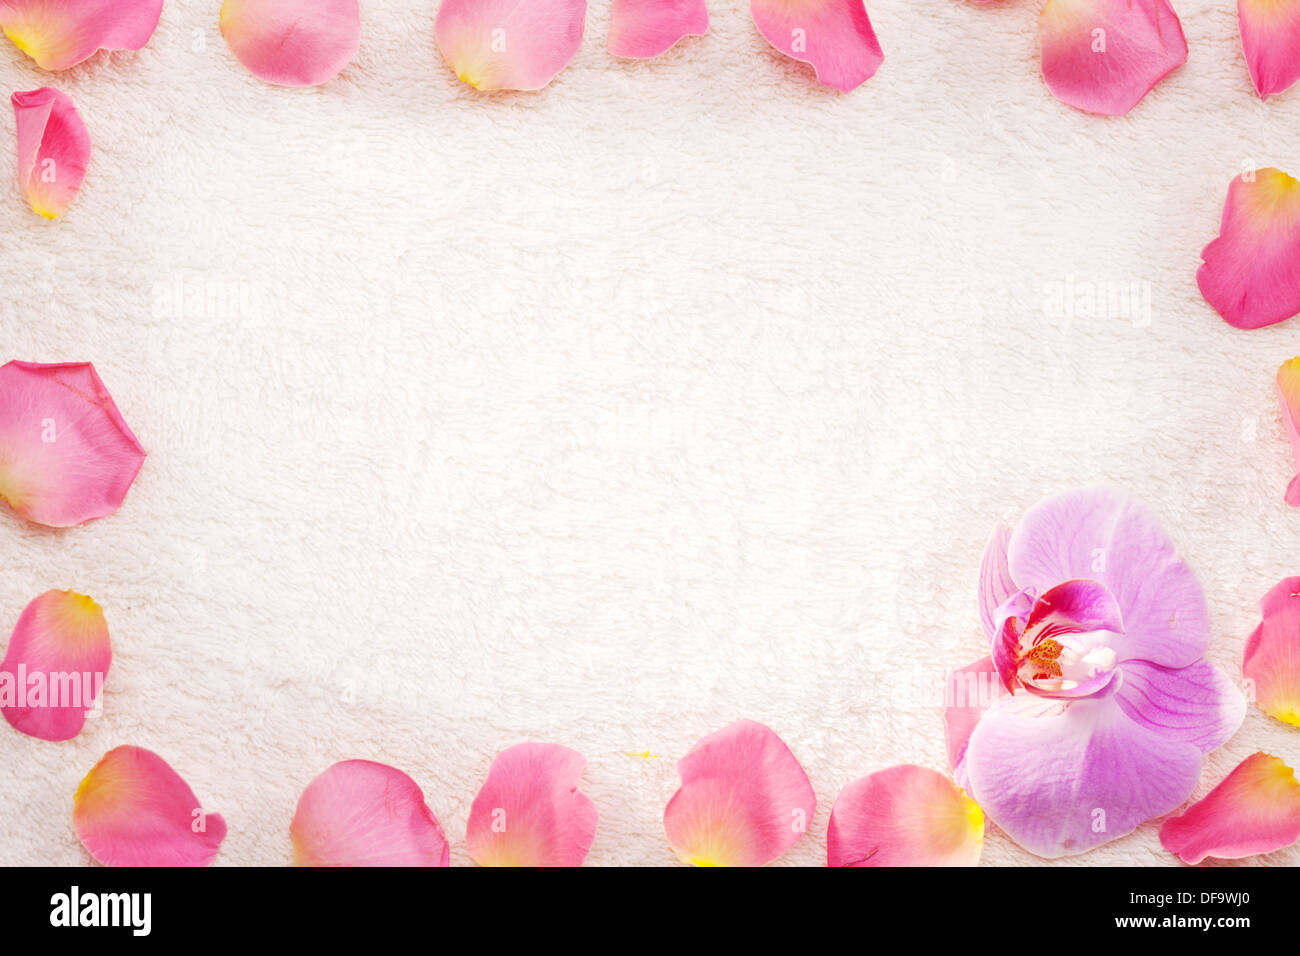 Rosenblüten als Rahmen auf ein weißes Handtuch angeordnet. Stockfoto